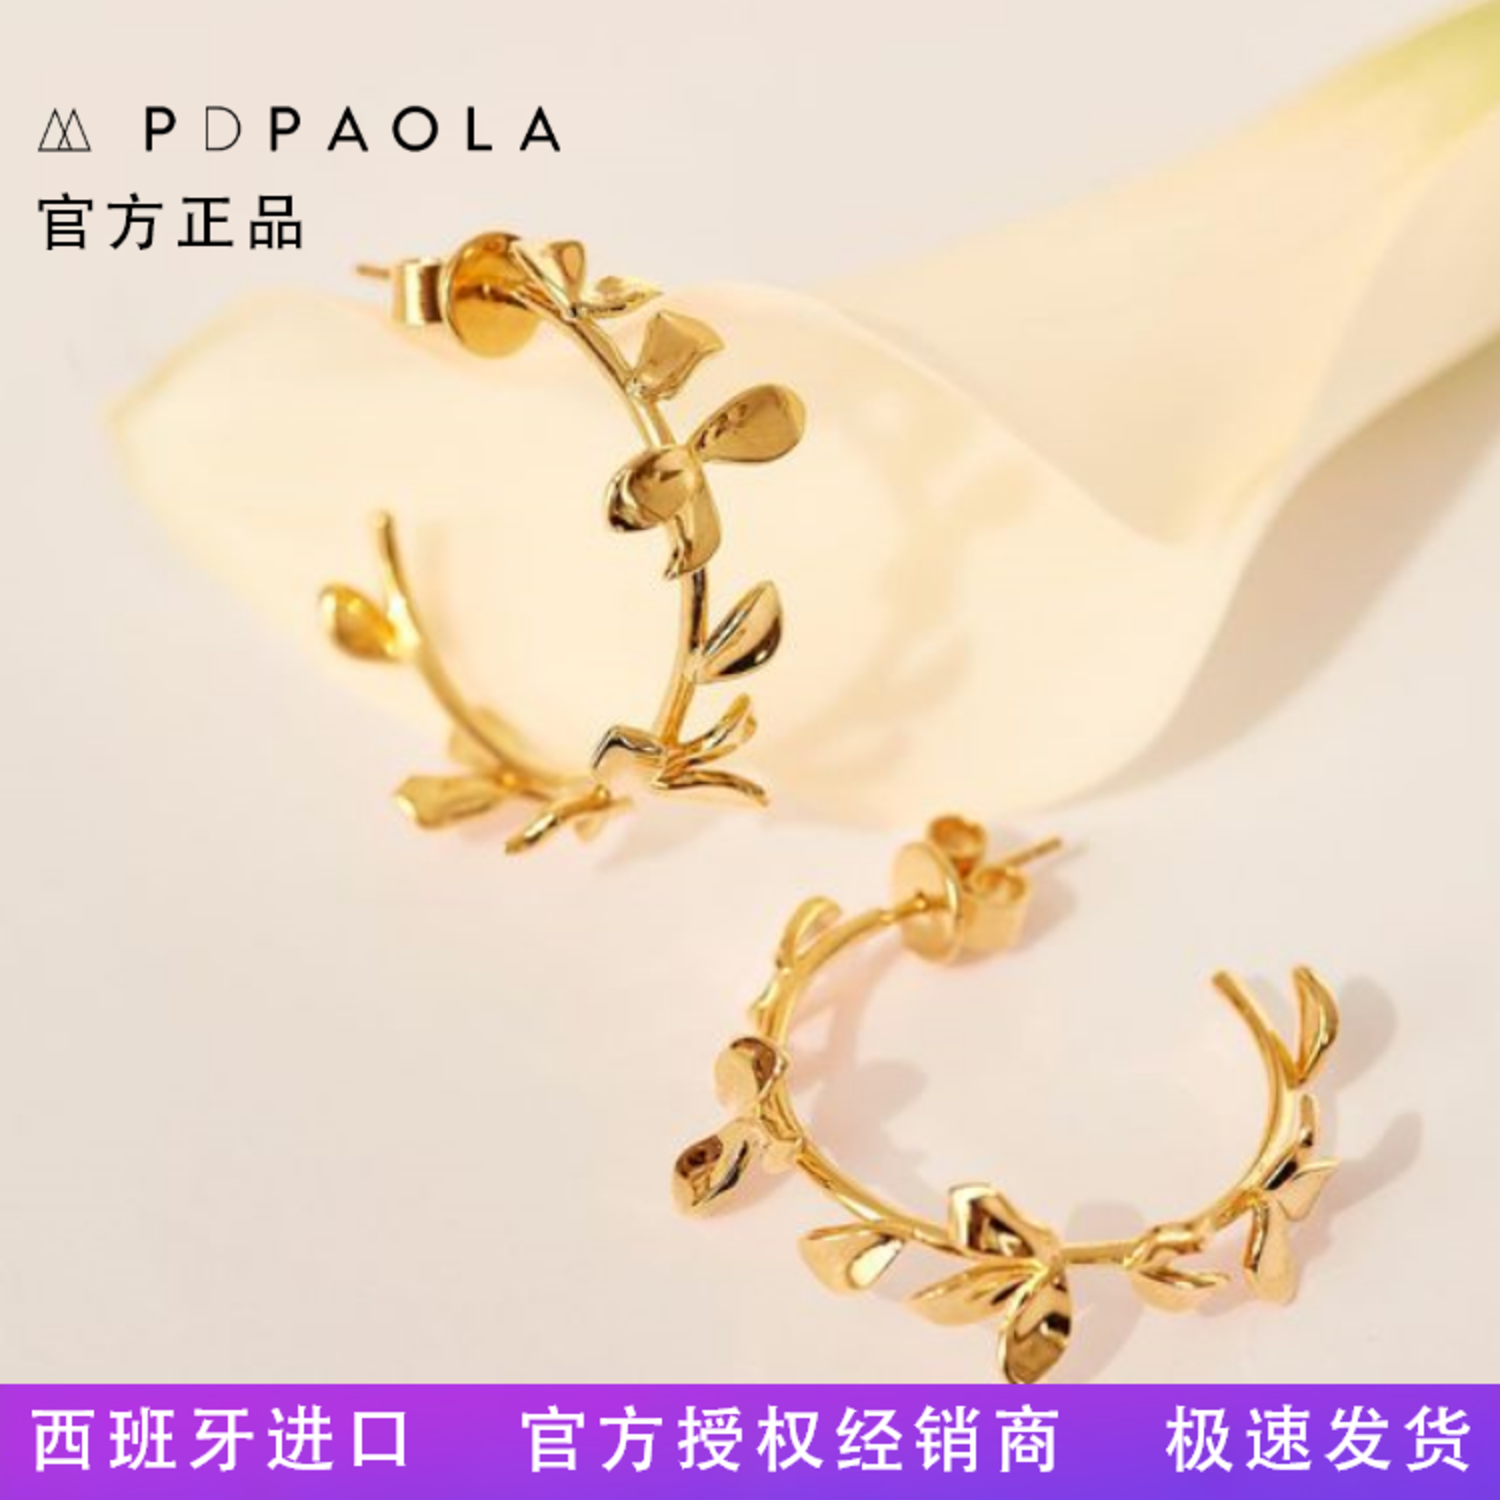 现货特惠西班牙进口Pd Paola夏季新品Lily镀金耳环耳钉现代时尚-2